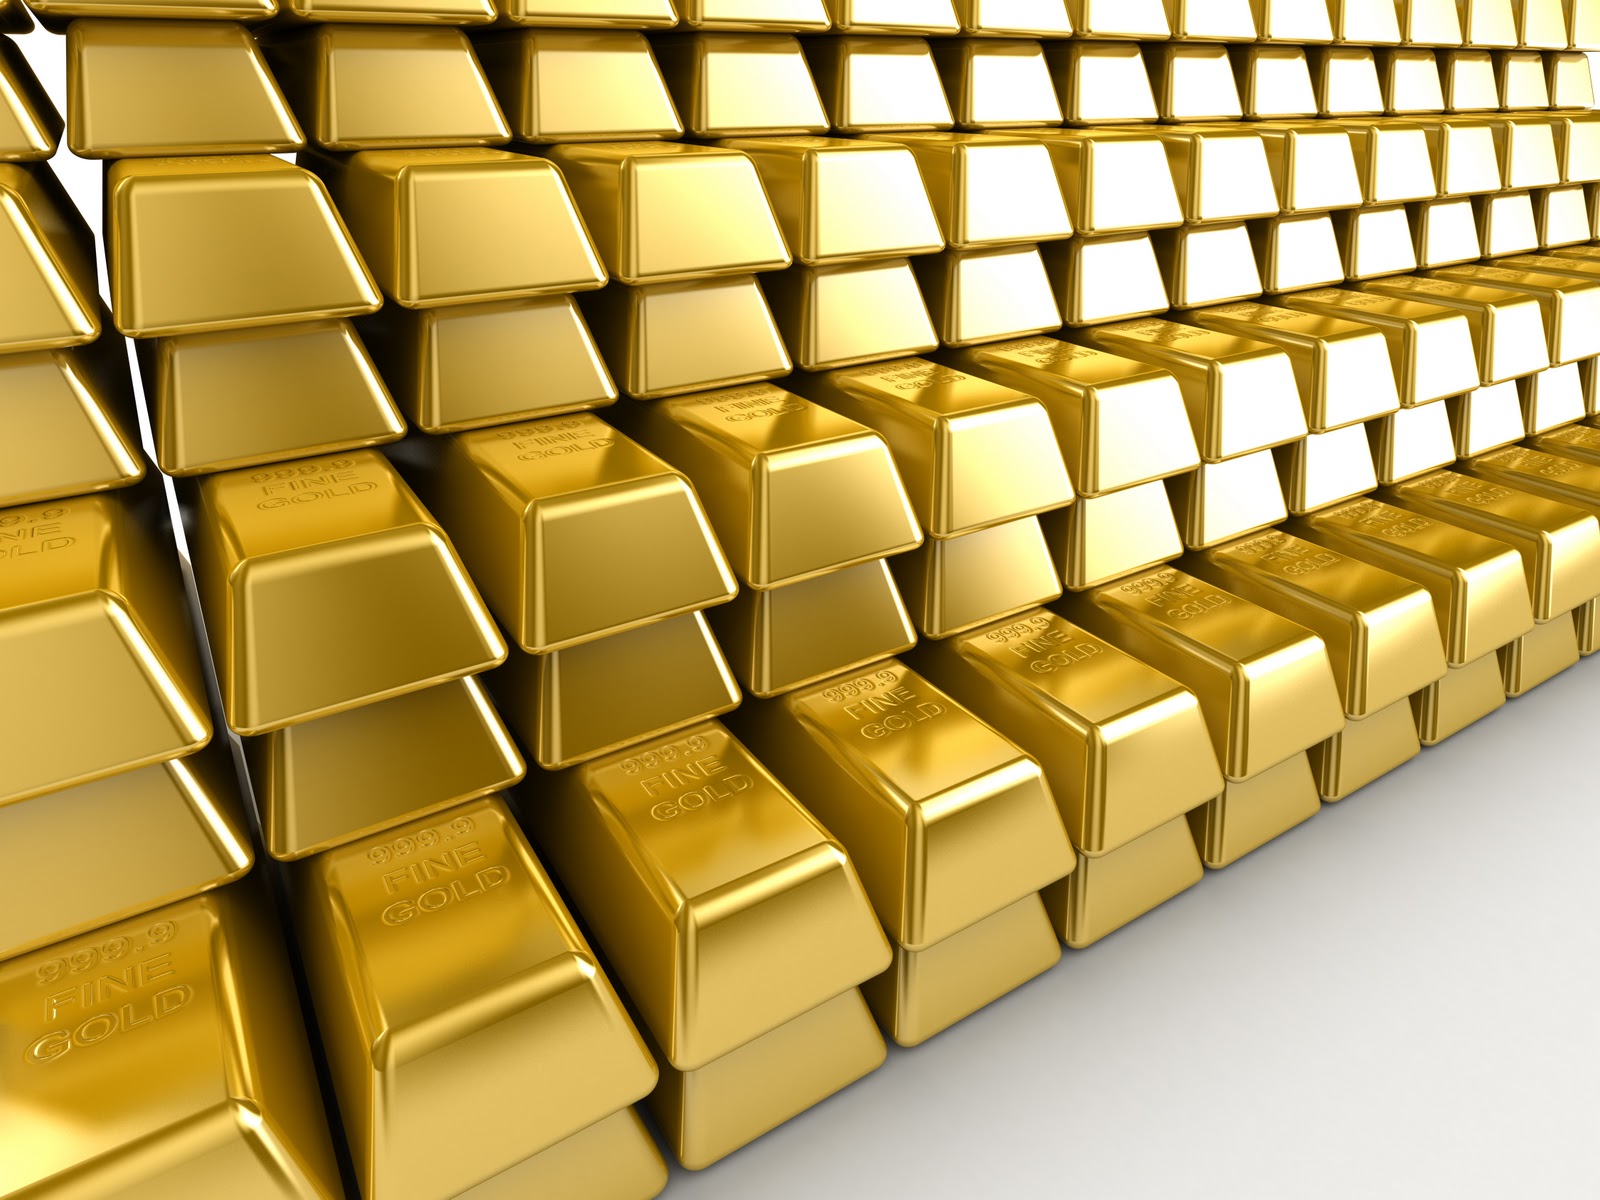 اسعار الذهب في السعودية اليوم الاحد 5 1 2014 سعر جرام الذهب في